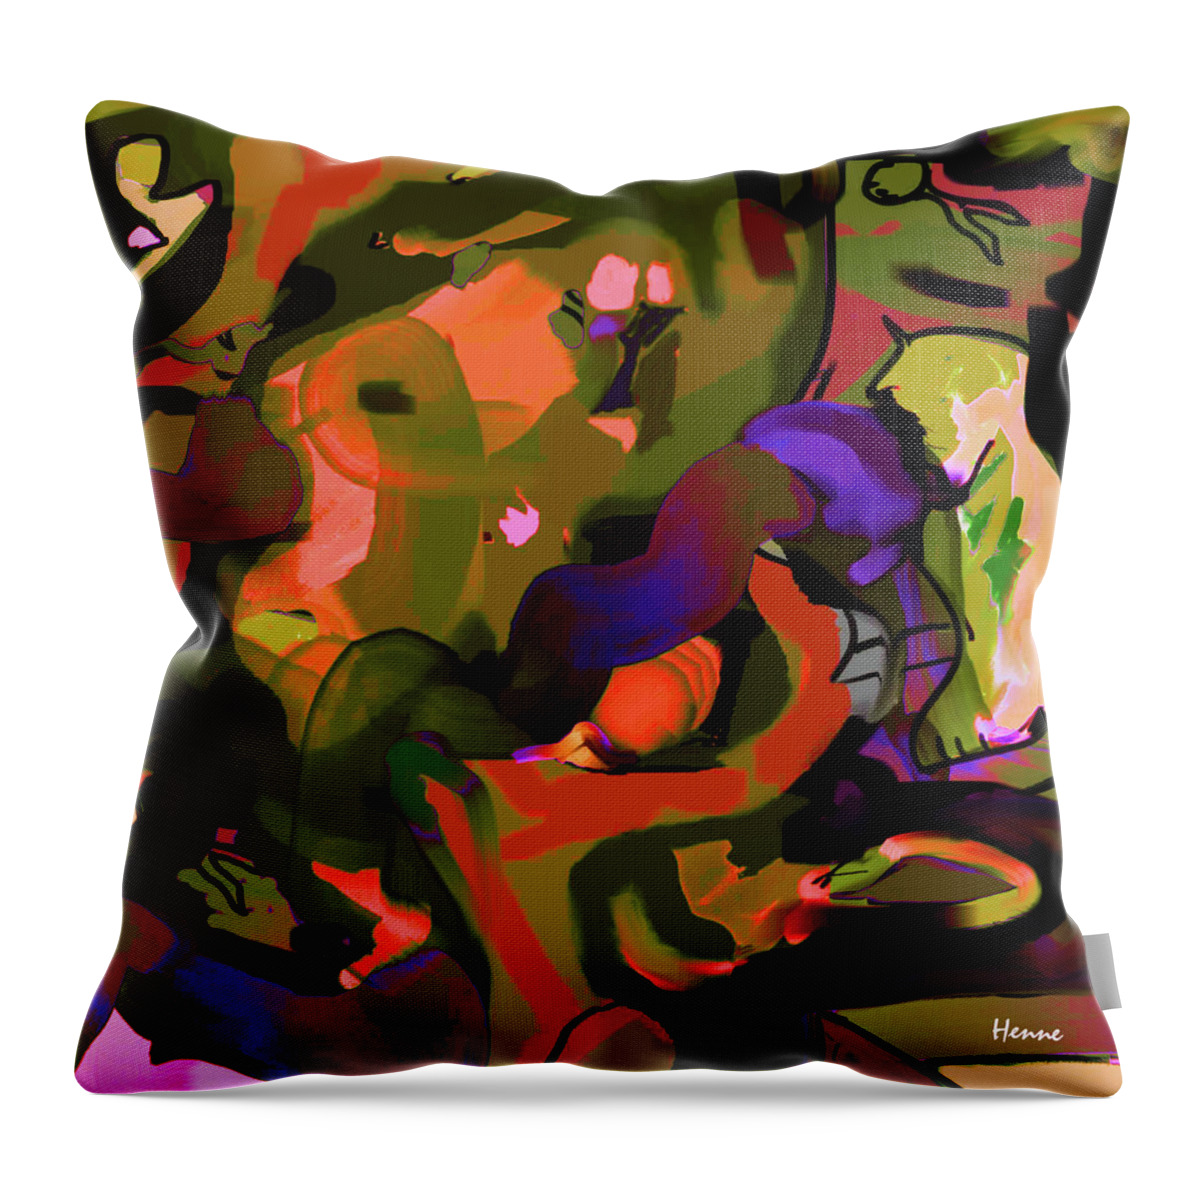 Digital Throw Pillow featuring the digital art Destiny by Robert Henne